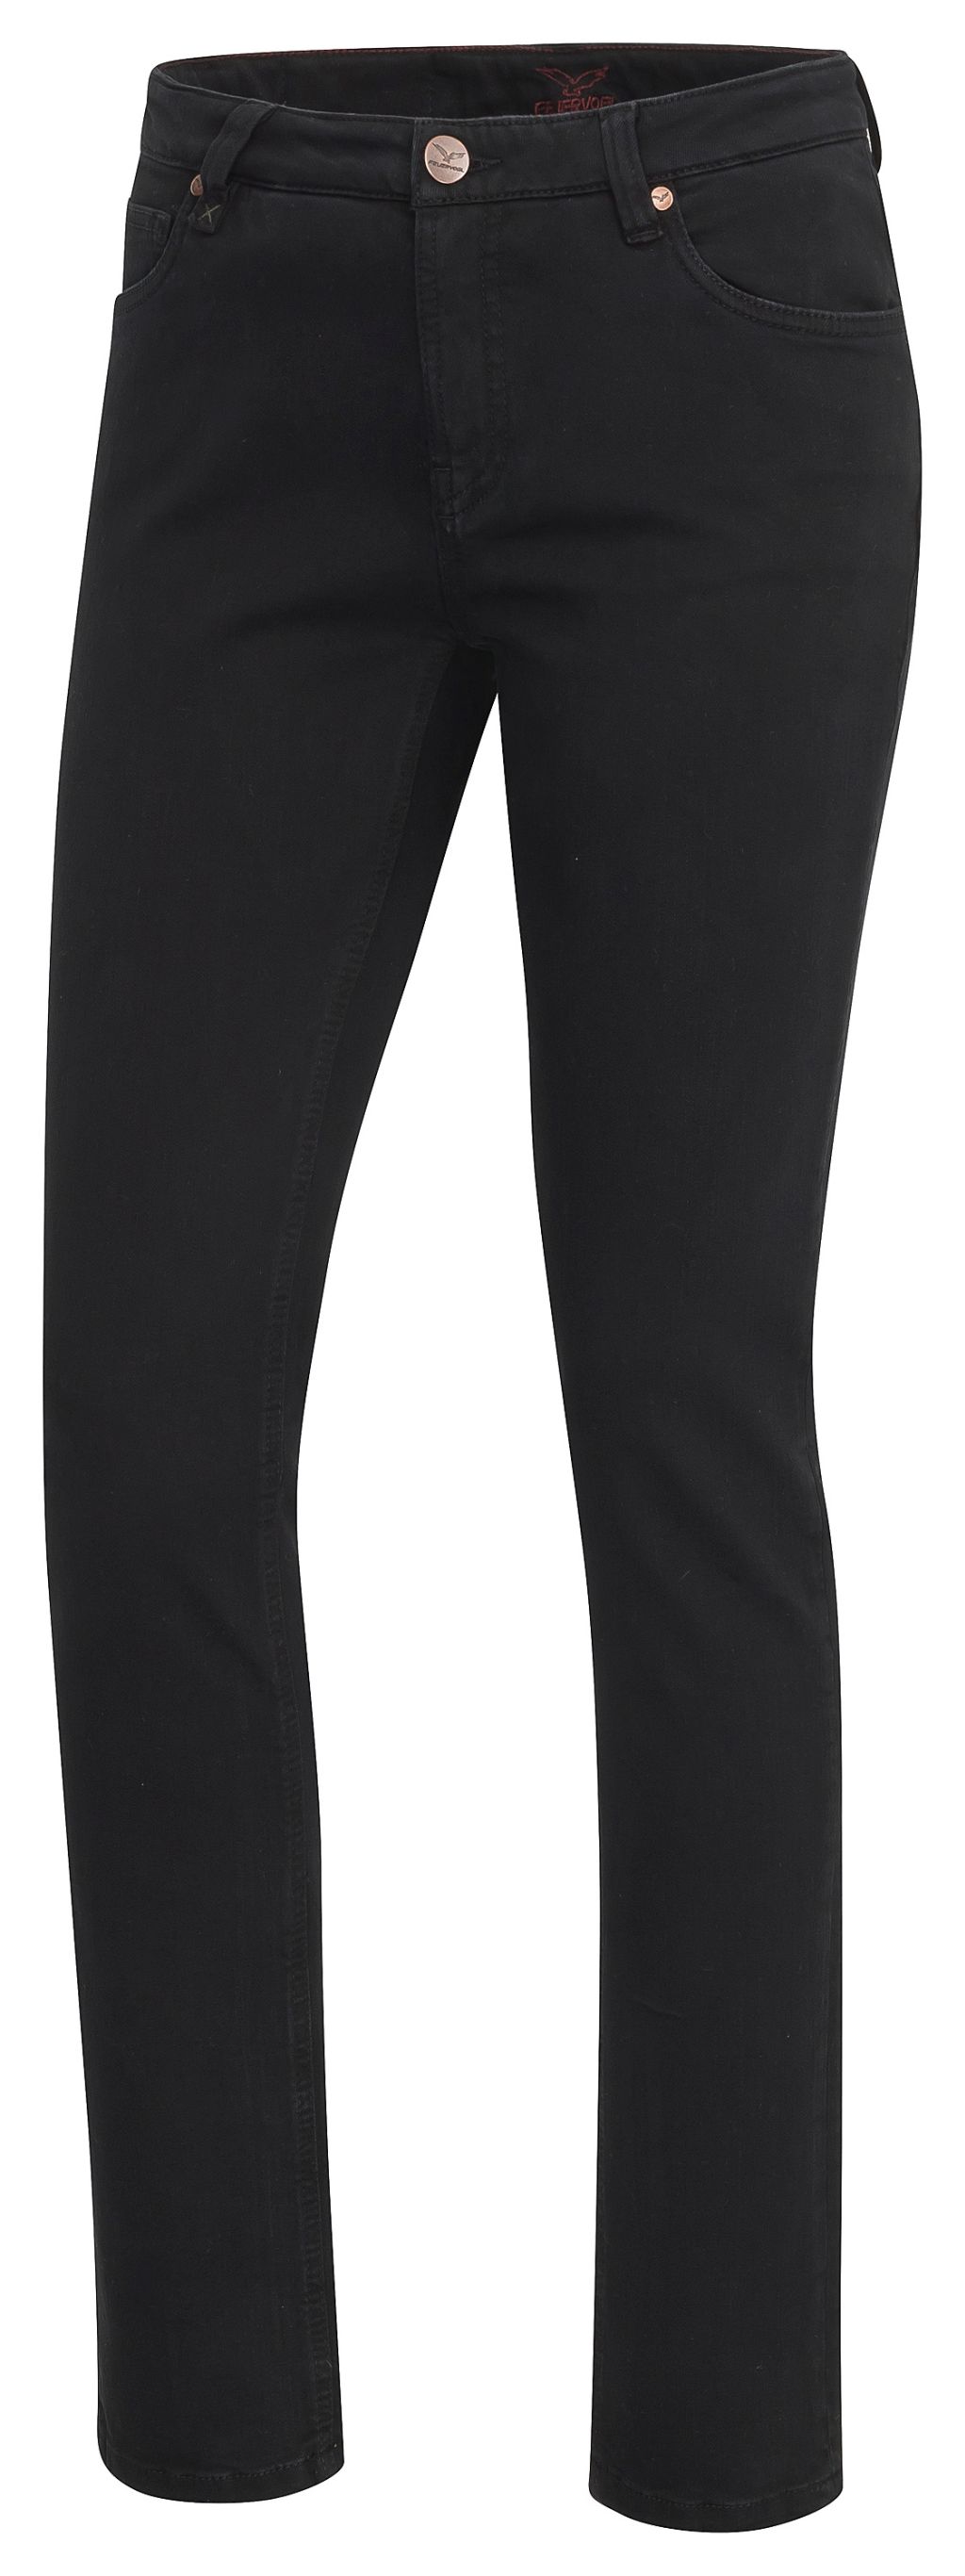 Svenja Black-Black Slim Fit Medium Waist Jeans - Bio-Baumwolle 36